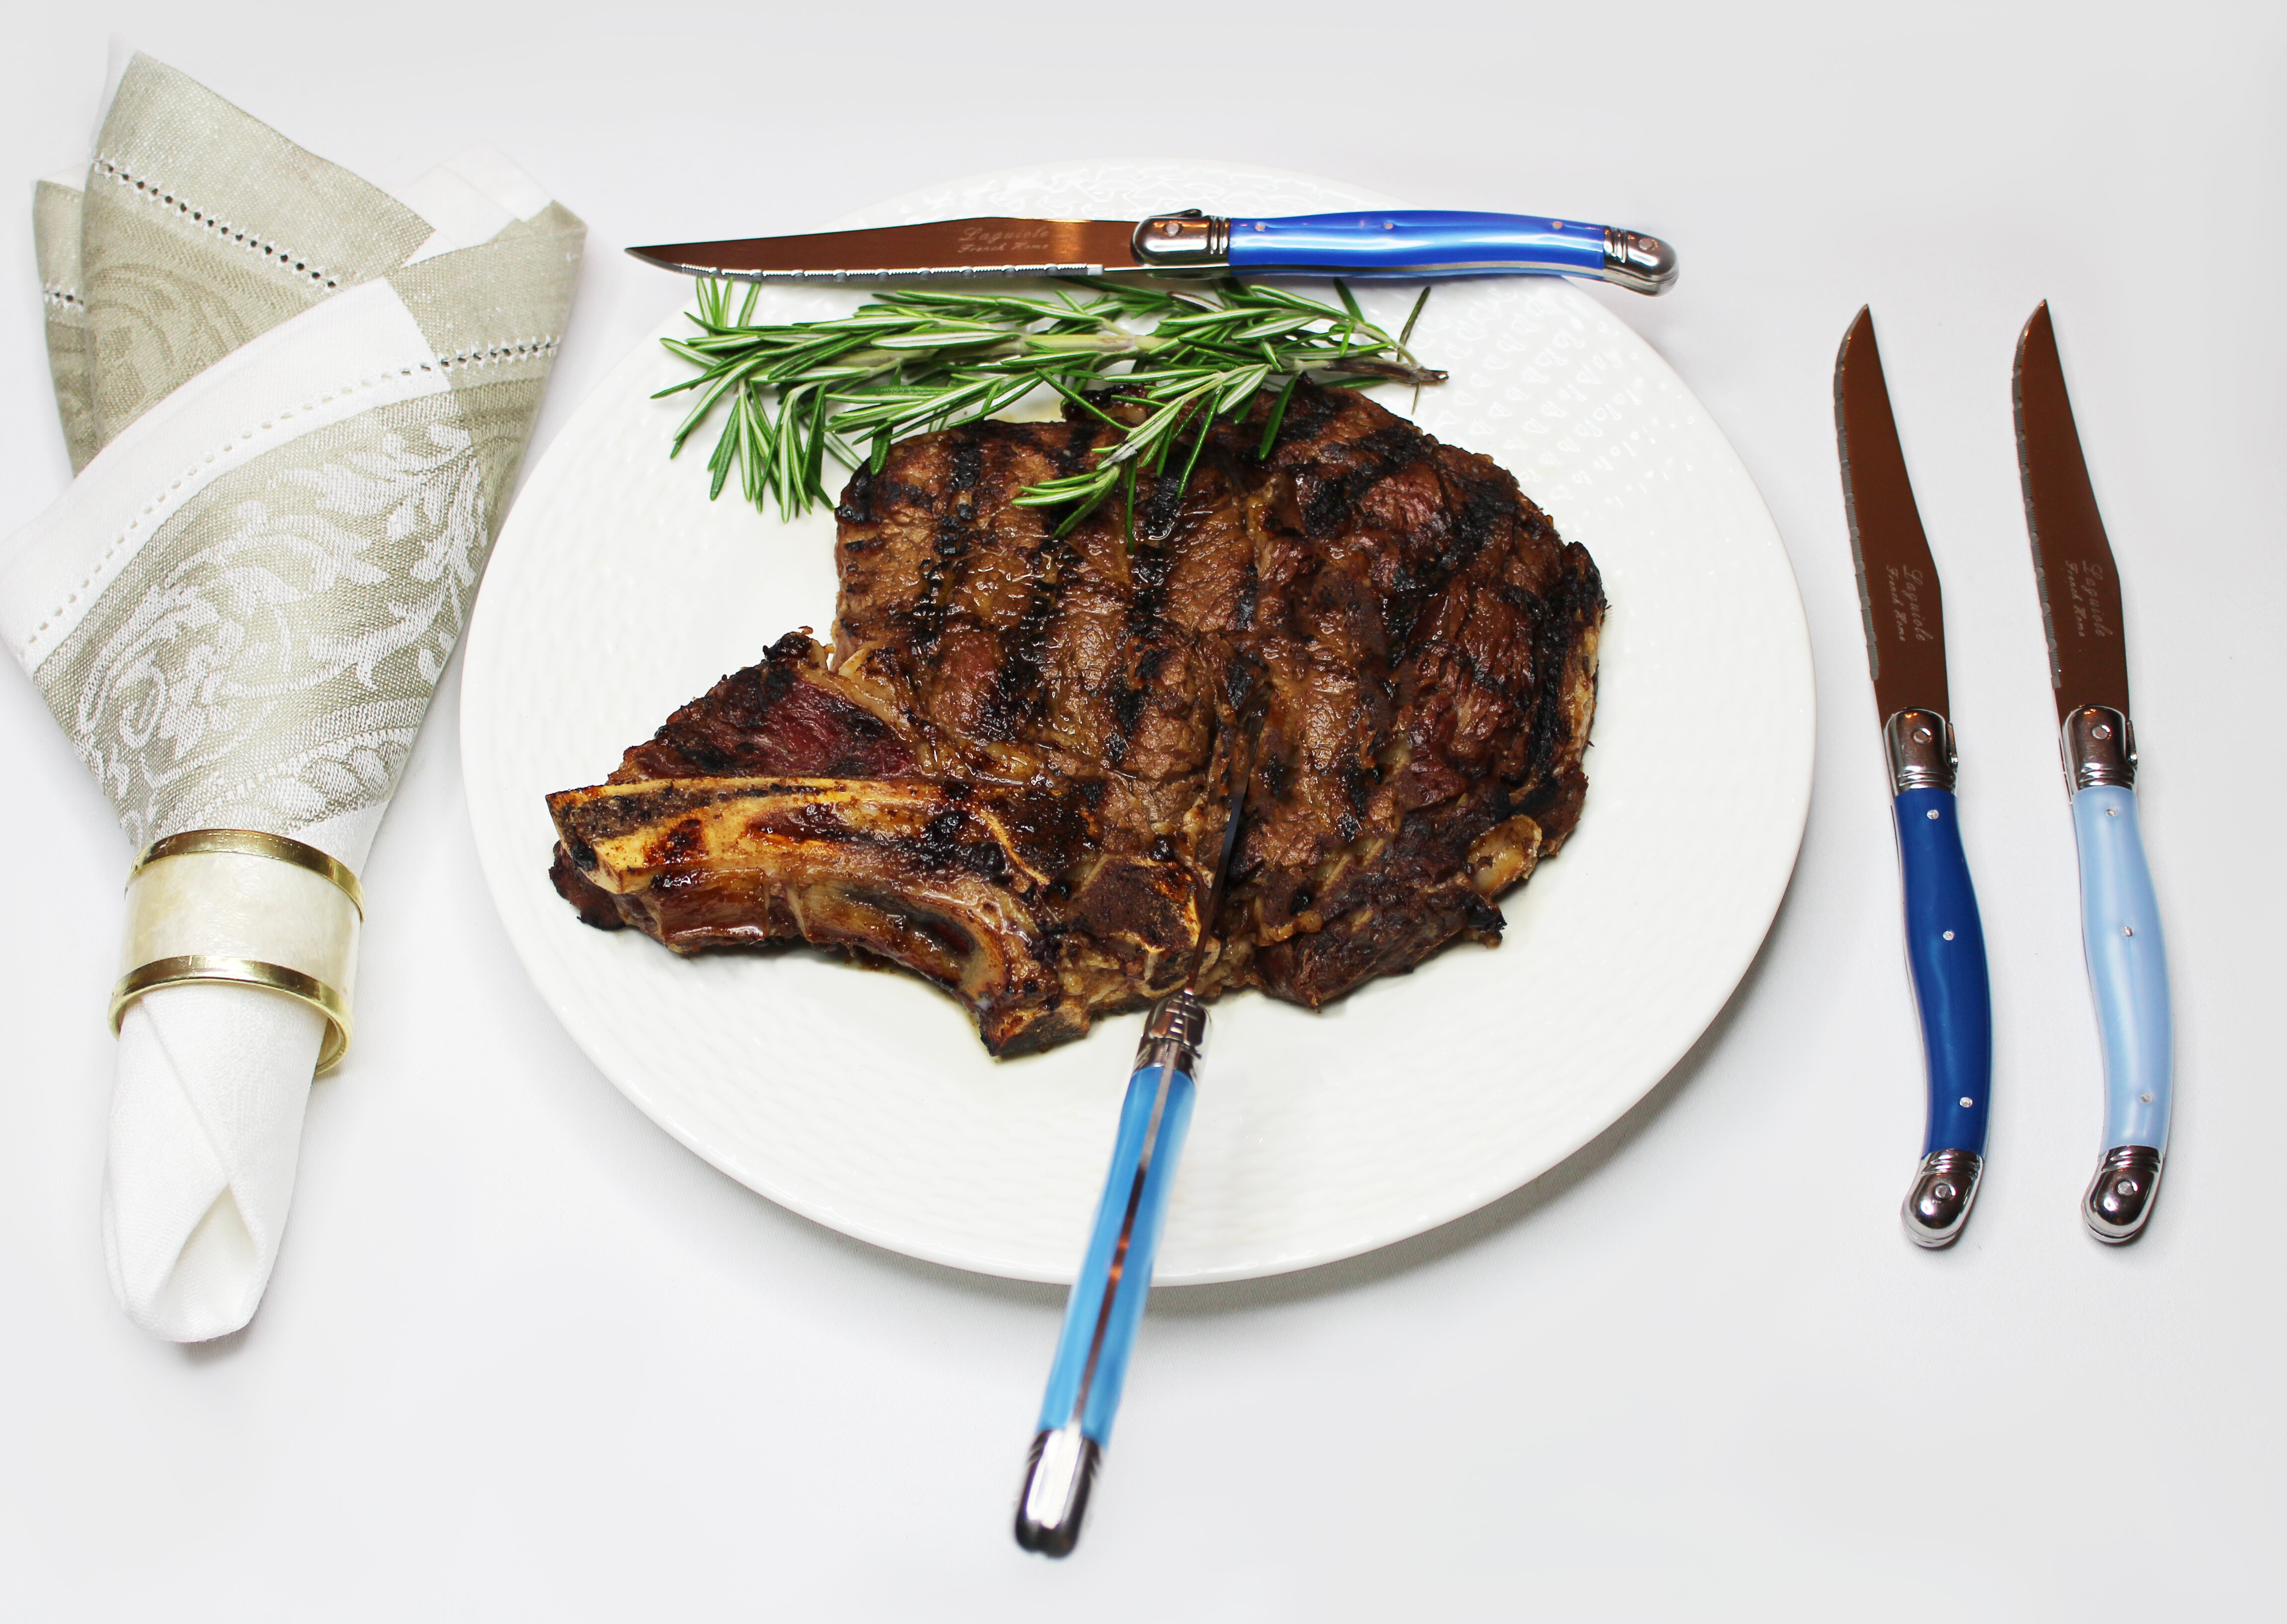 French Home Laguiole Connoisseur 4 - Piece Steak Knife Set & Reviews